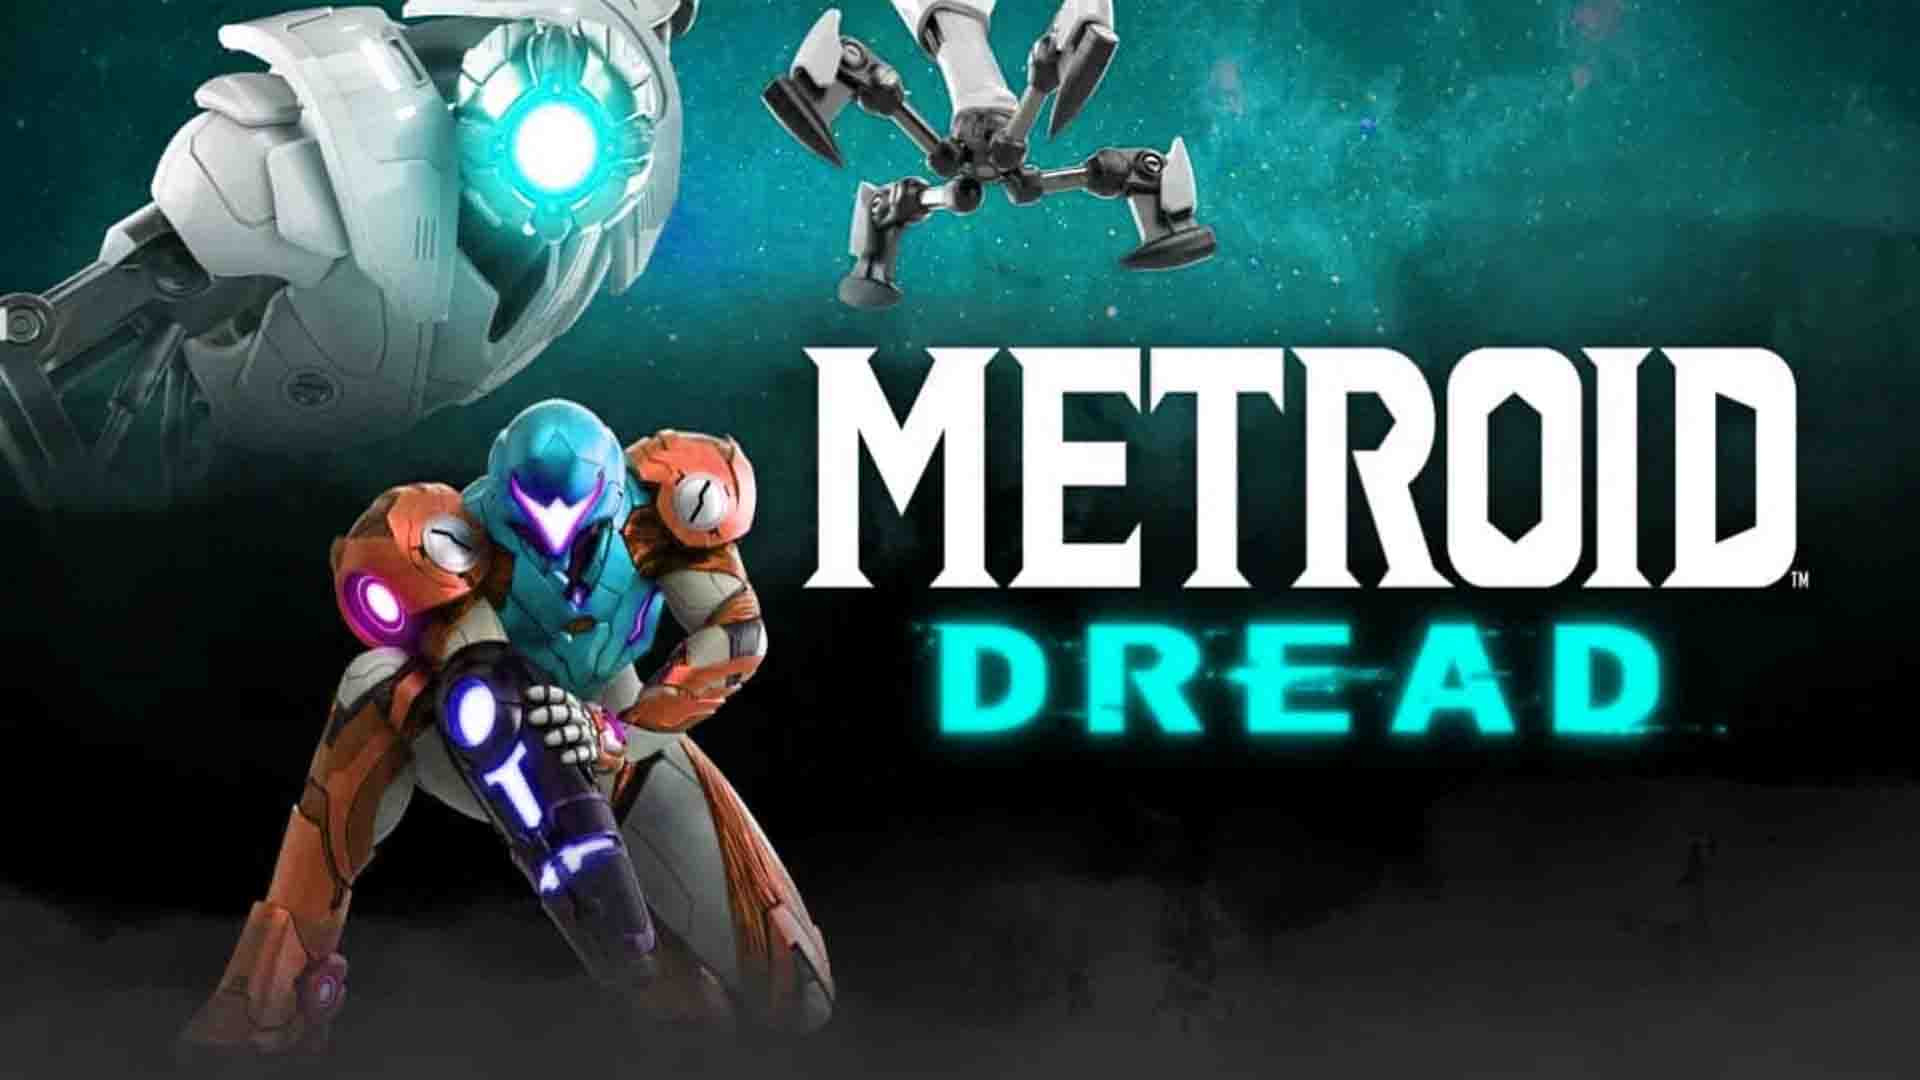 Metroid Dread is not final